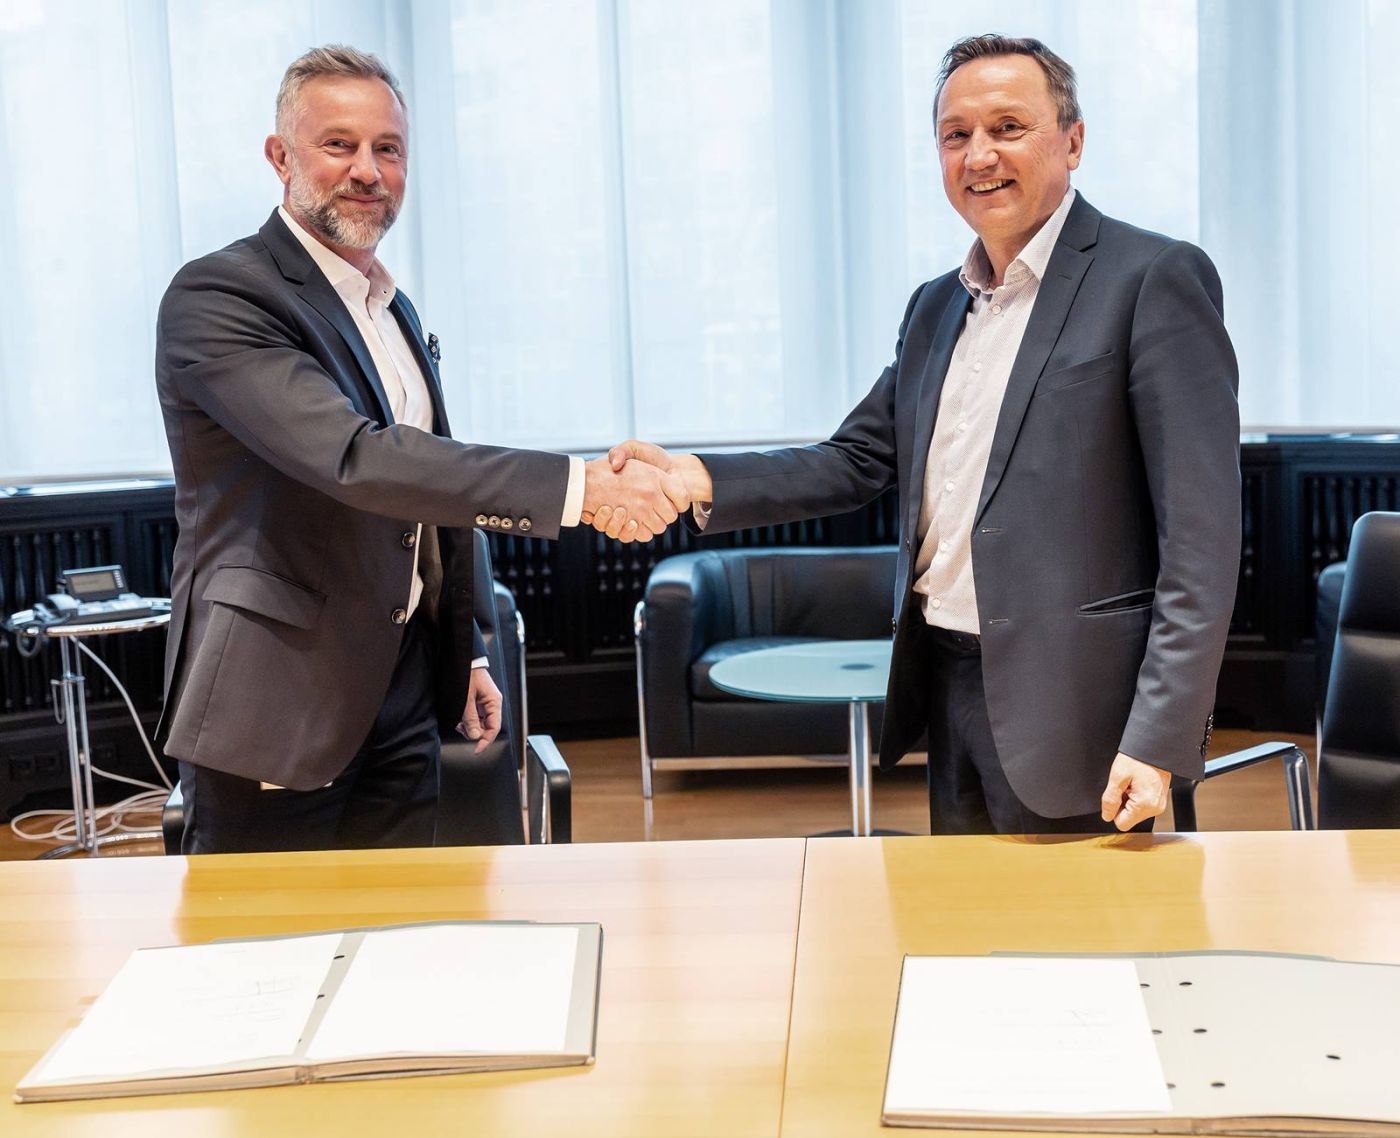 Domenico Iacovelli, CEO der Schuler-Gruppe, und Olivier Leteurtre, CEO der AutoForm-Gruppe, haben den Kooperationsvertrag unterzeichnet.